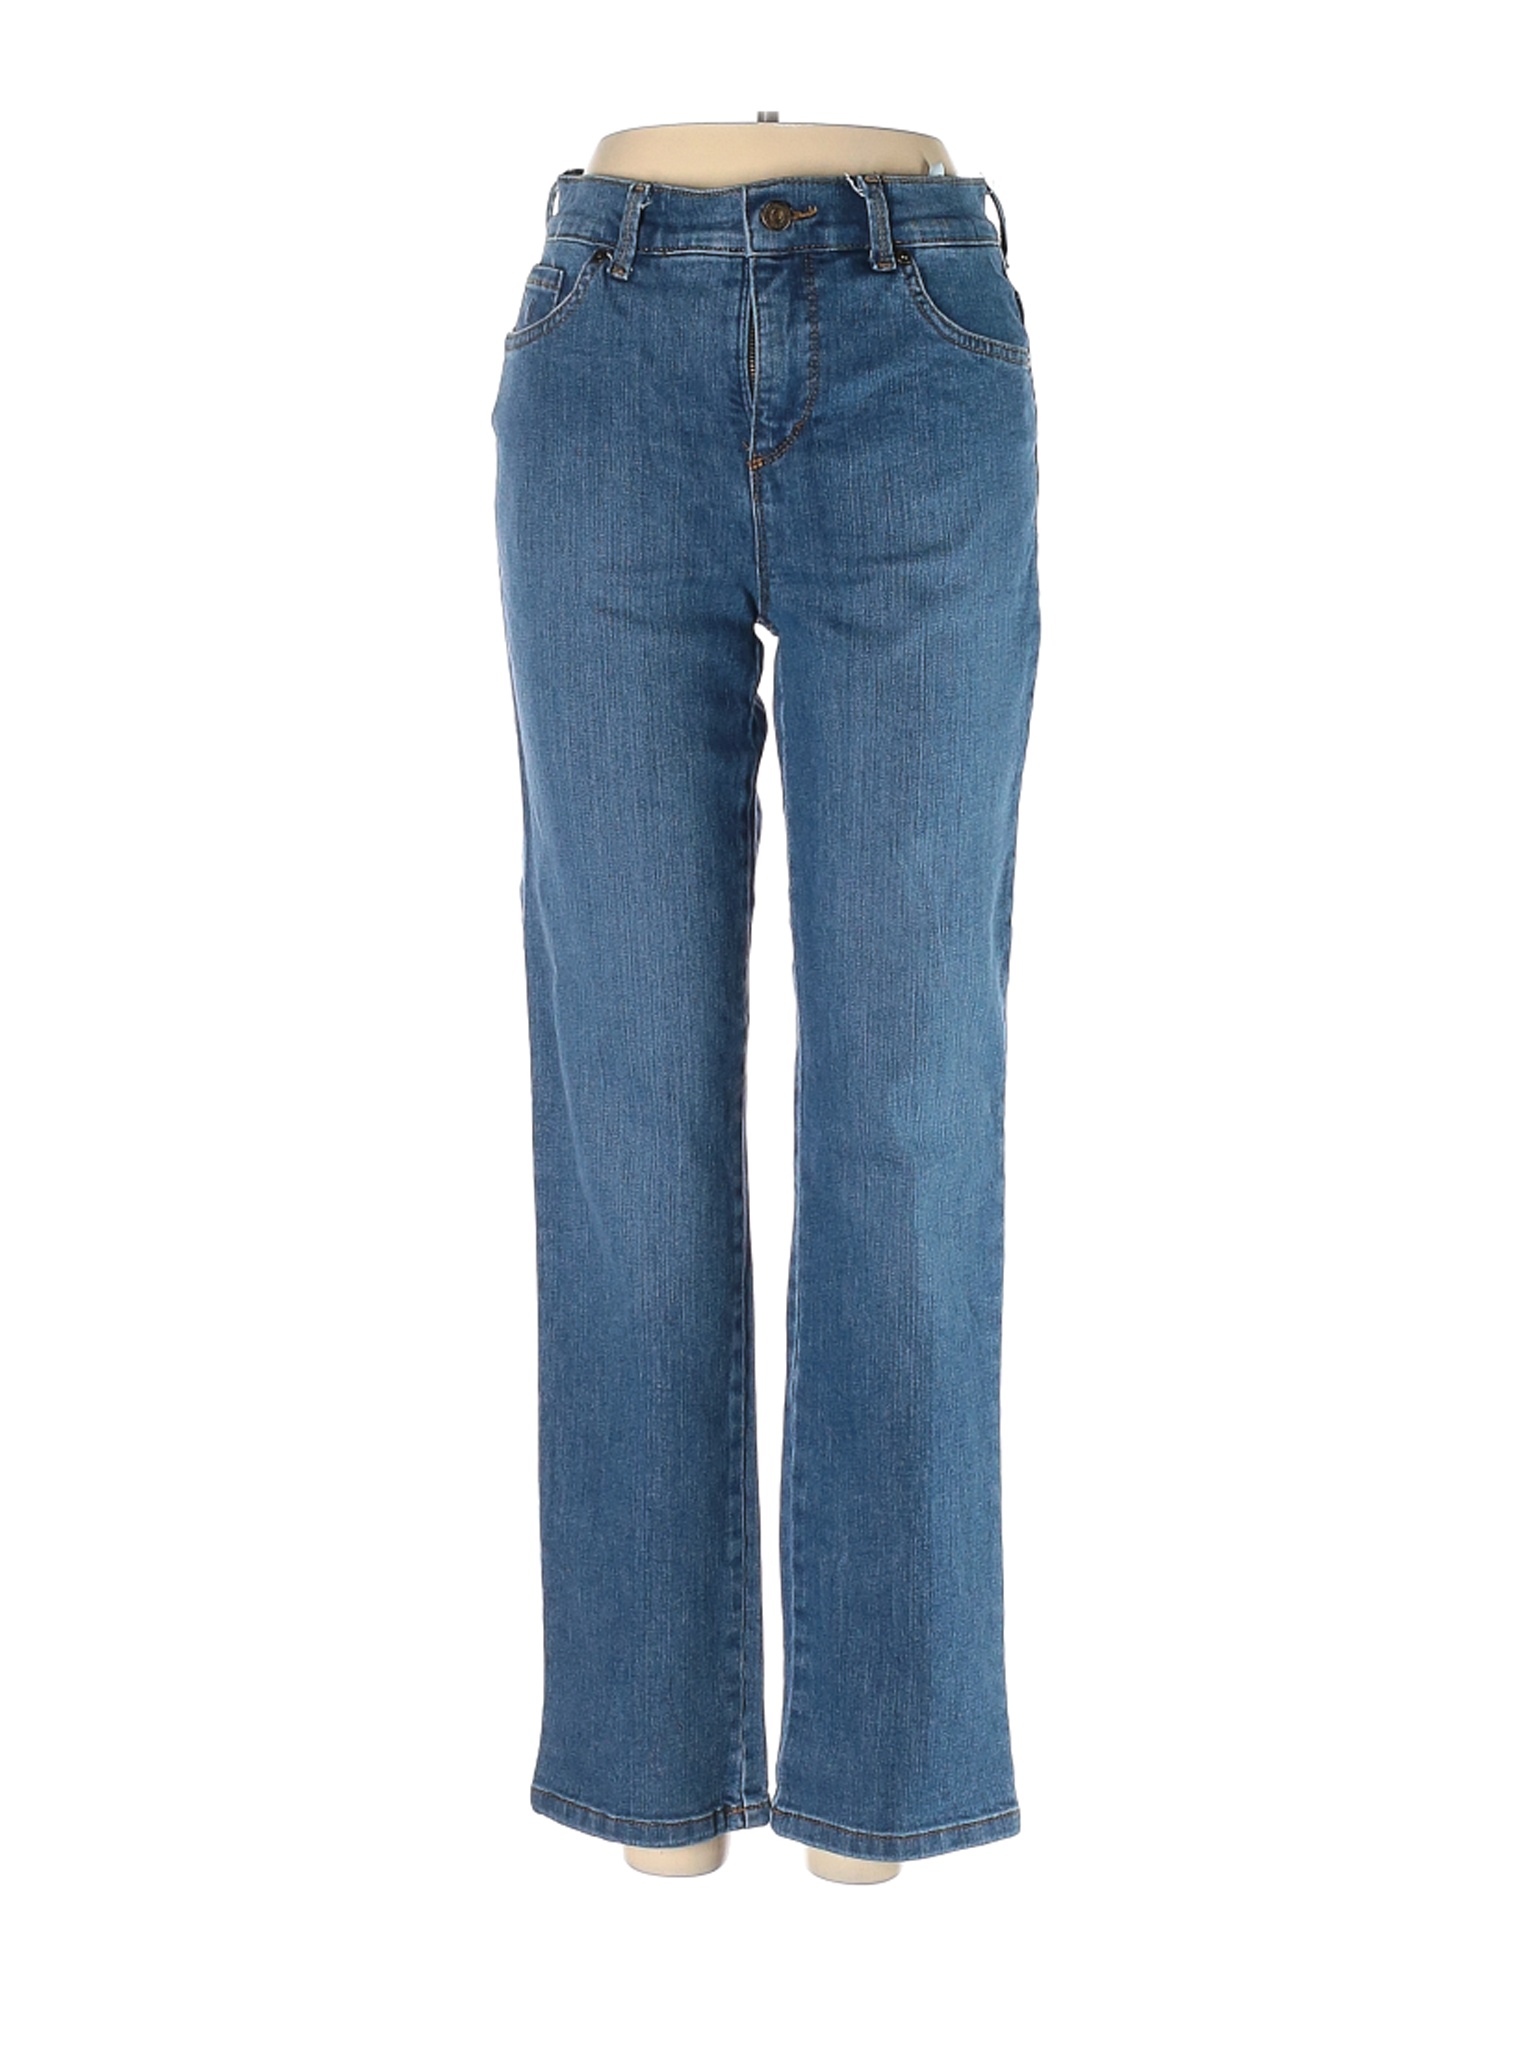 Gloria Vanderbilt Women Blue Jeans 2 | eBay